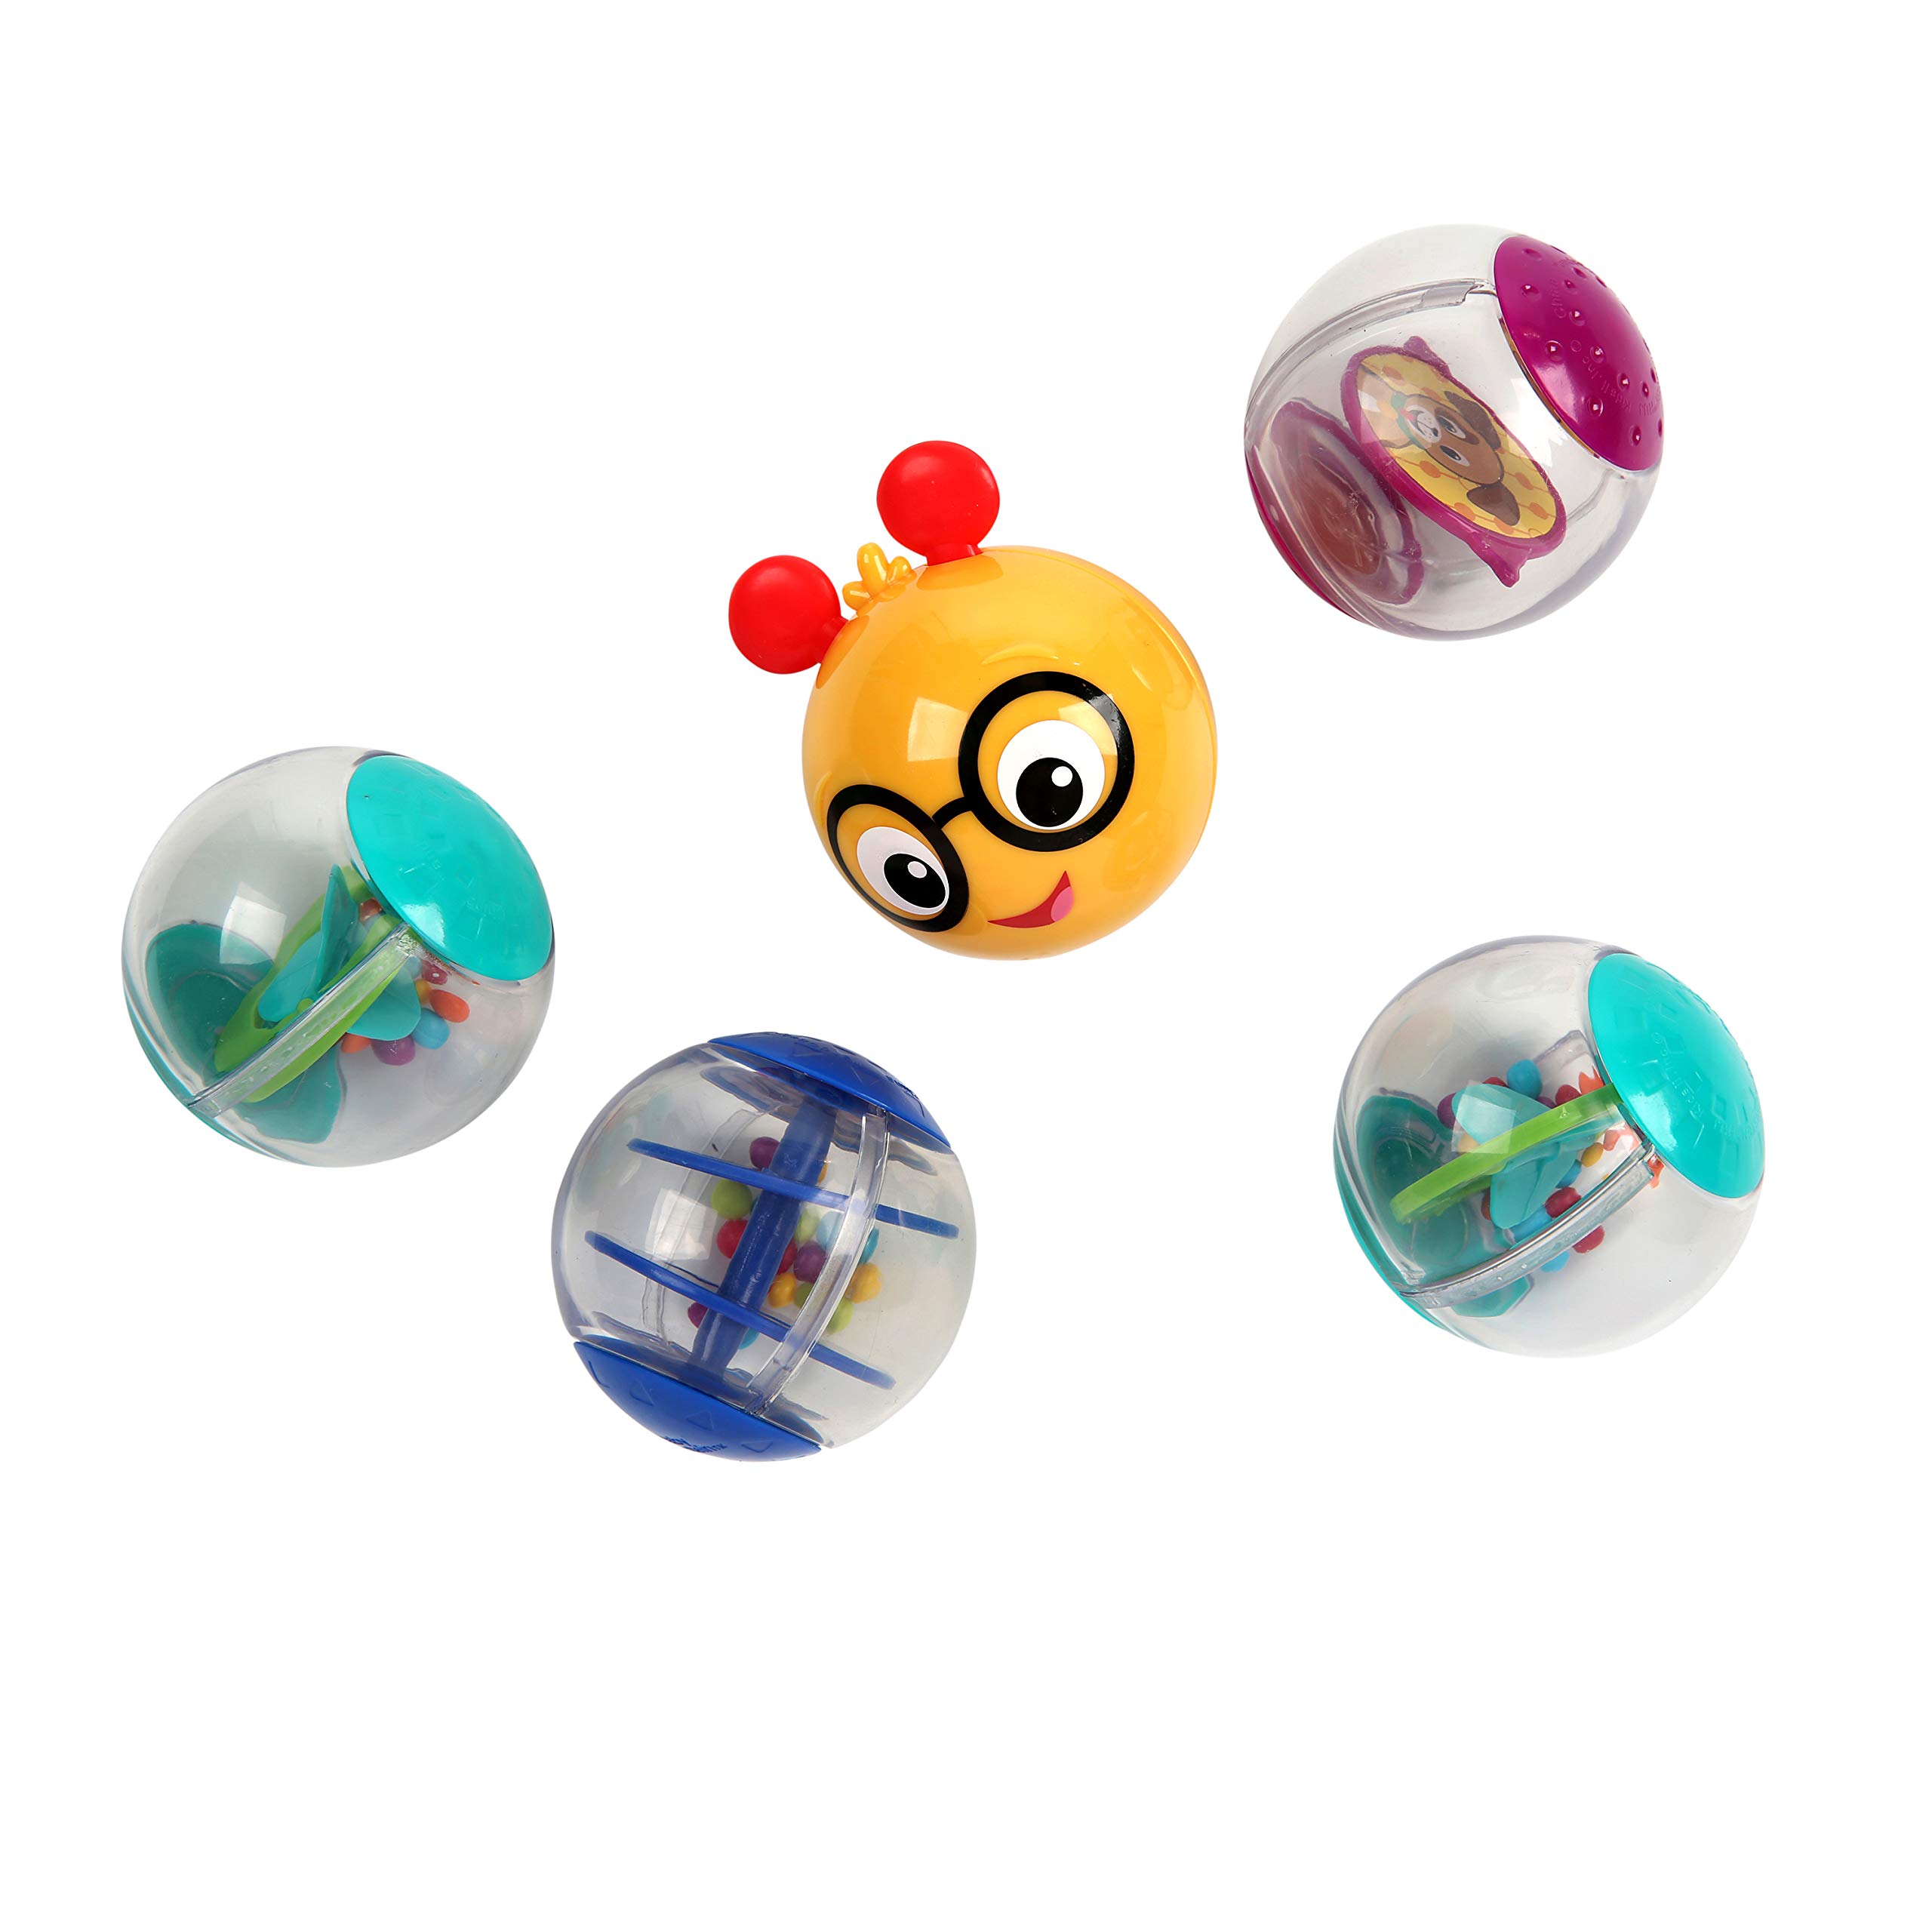 Baby Einstein Roller-pillar Activity Balls Toy, Ages 3 months +